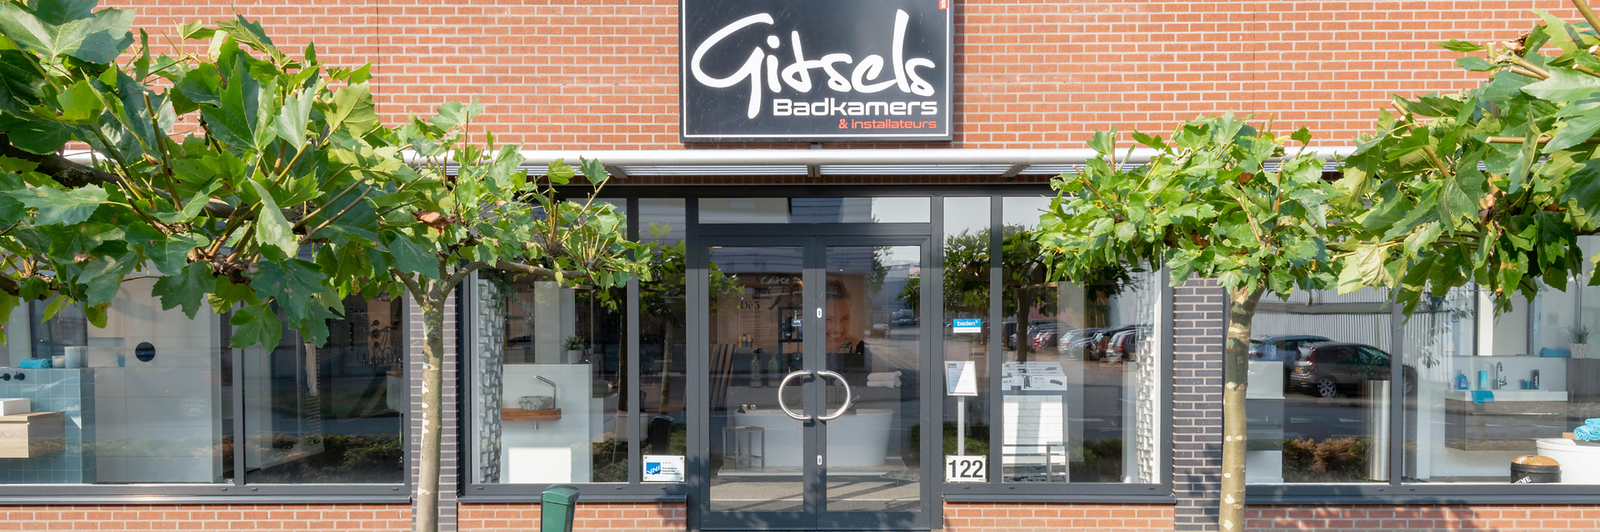 Installatiebedrijf gaswacht Gelderland zet gitsels badkamers voort